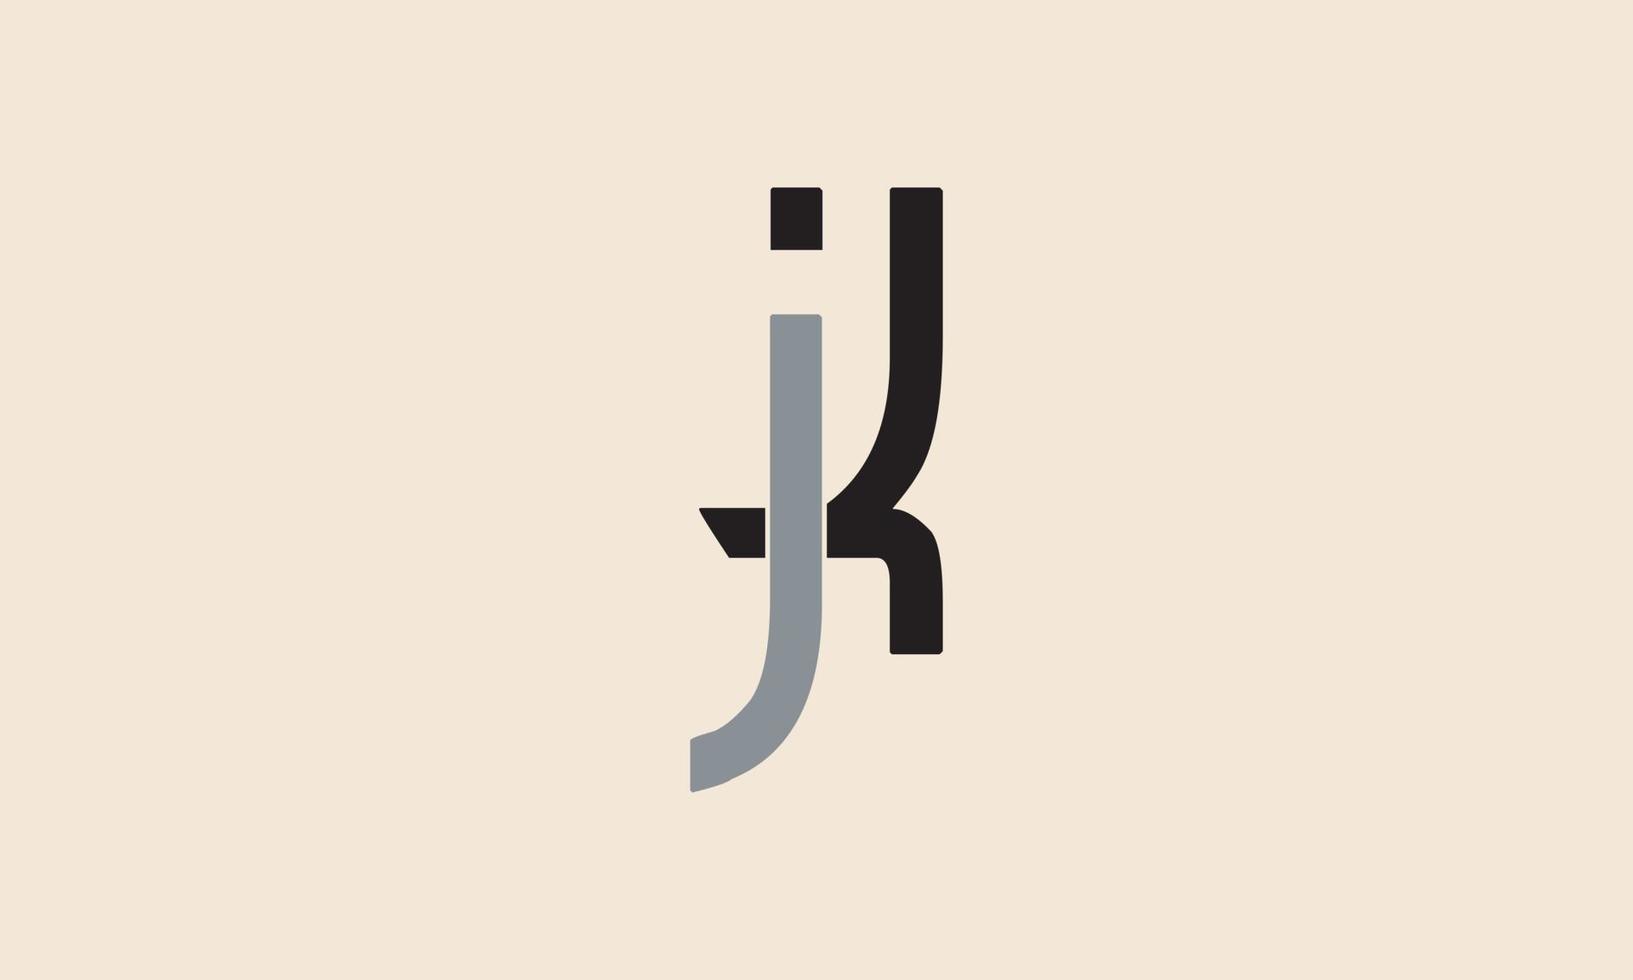 letras do alfabeto iniciais monograma logotipo jk, kj, j e k vetor